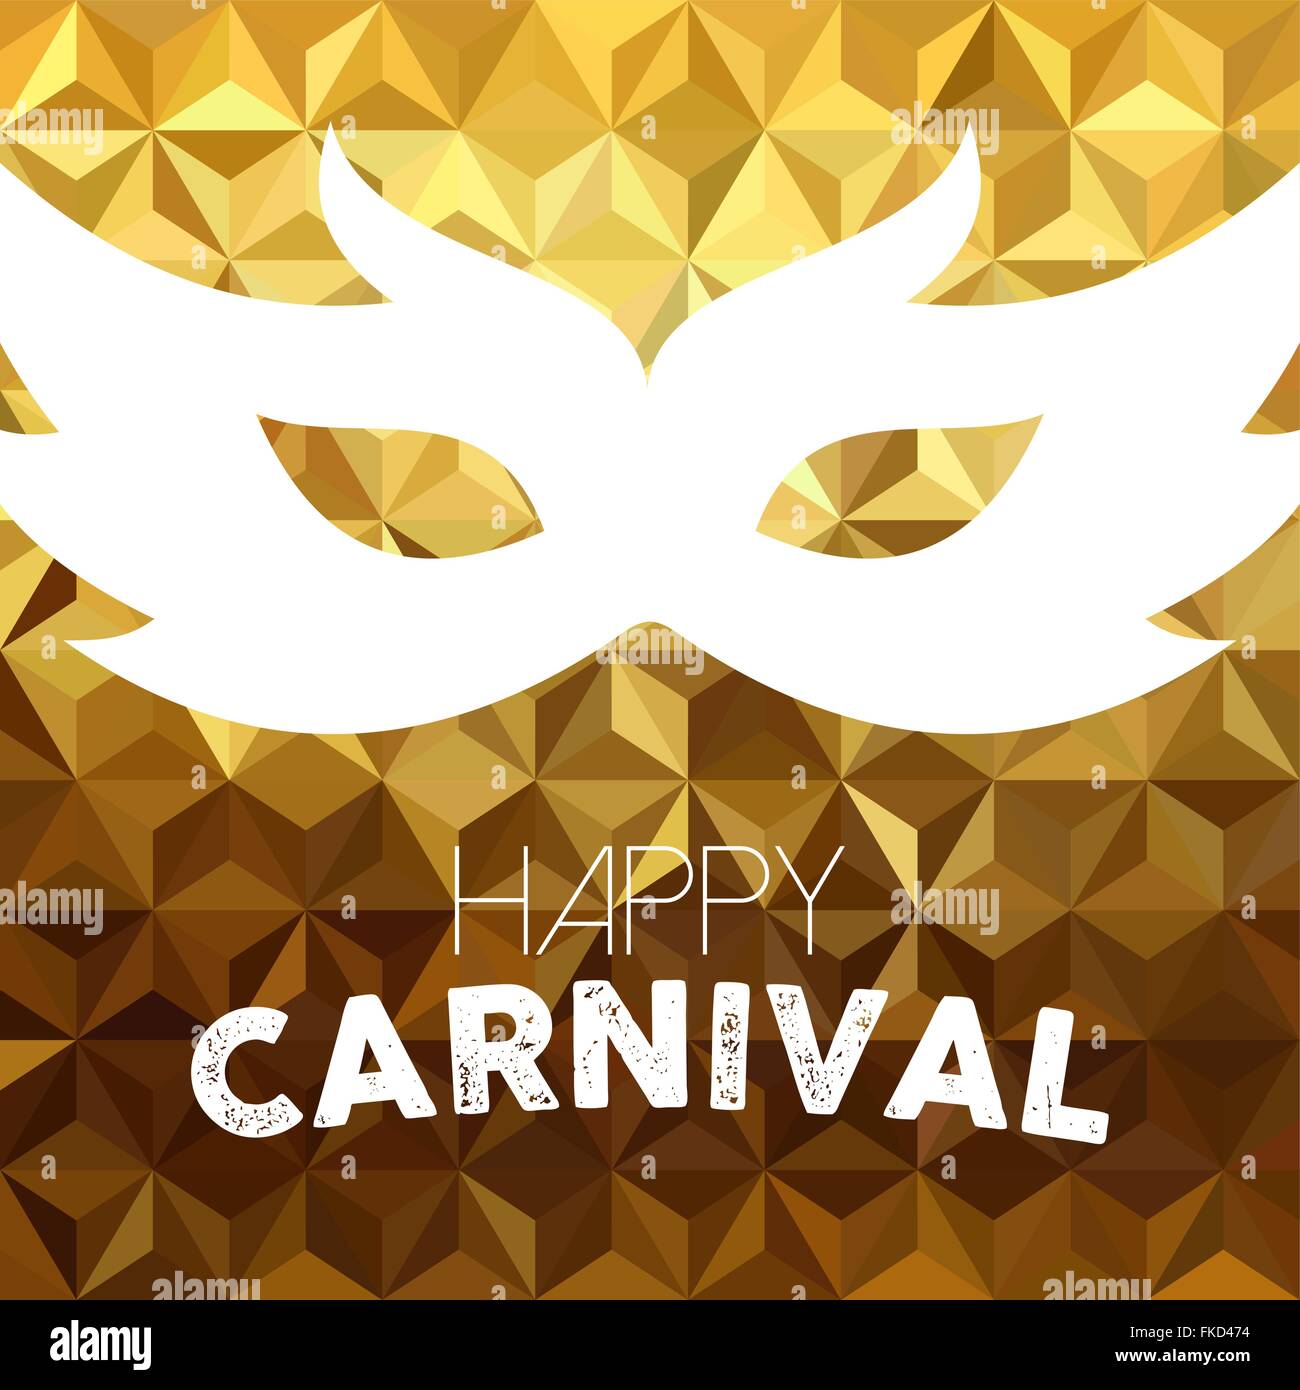 Carnaval heureux, design vintage masque costume avec du texte sur fond de luxe d'or. Vecteur EPS10. Illustration de Vecteur